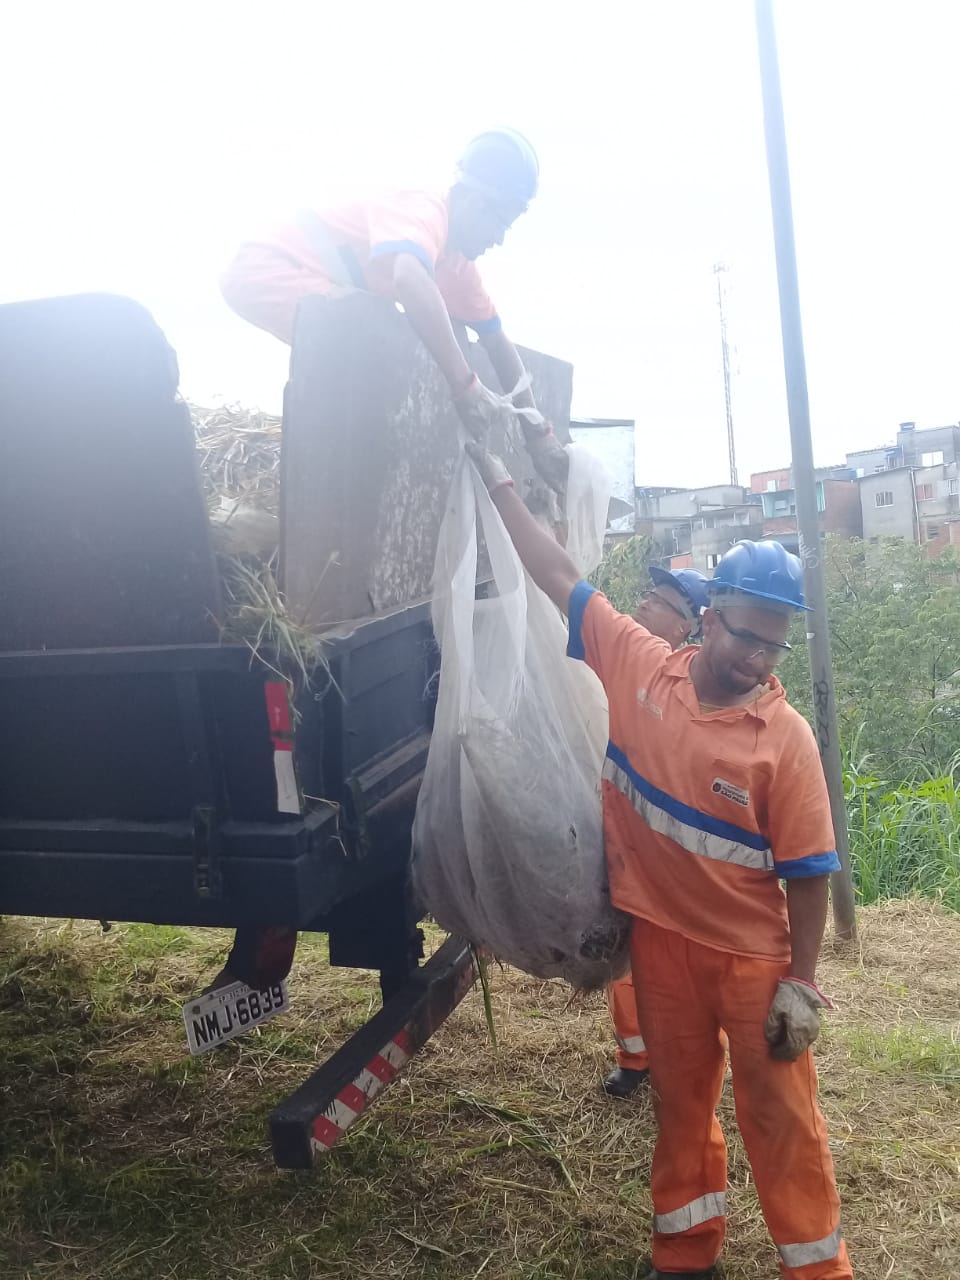 Um funcionário abaixo entrega o saco de grama recolhida a um funcionário que está sobre um caminhão, ambos de uniforme laranja e capacete azul.